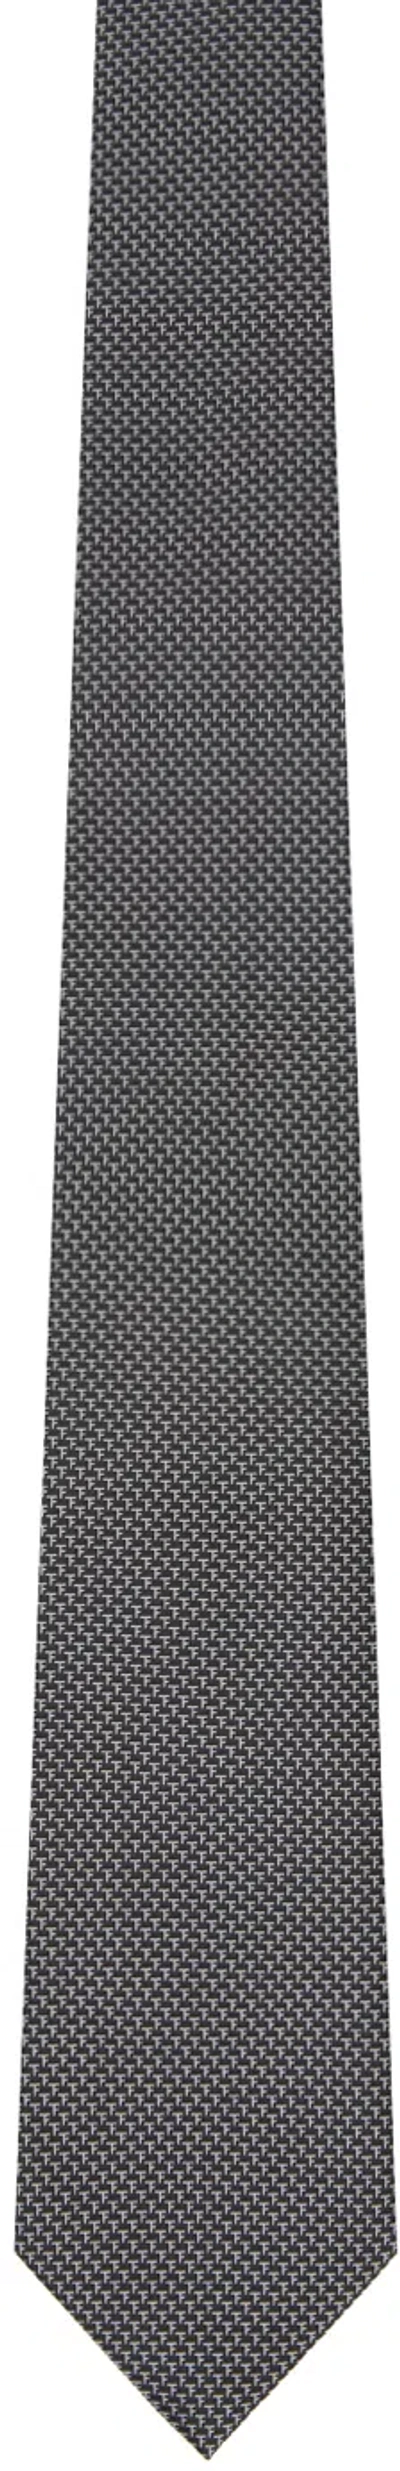 Tom Ford Black & White Jacquard Tie In Black Stripe